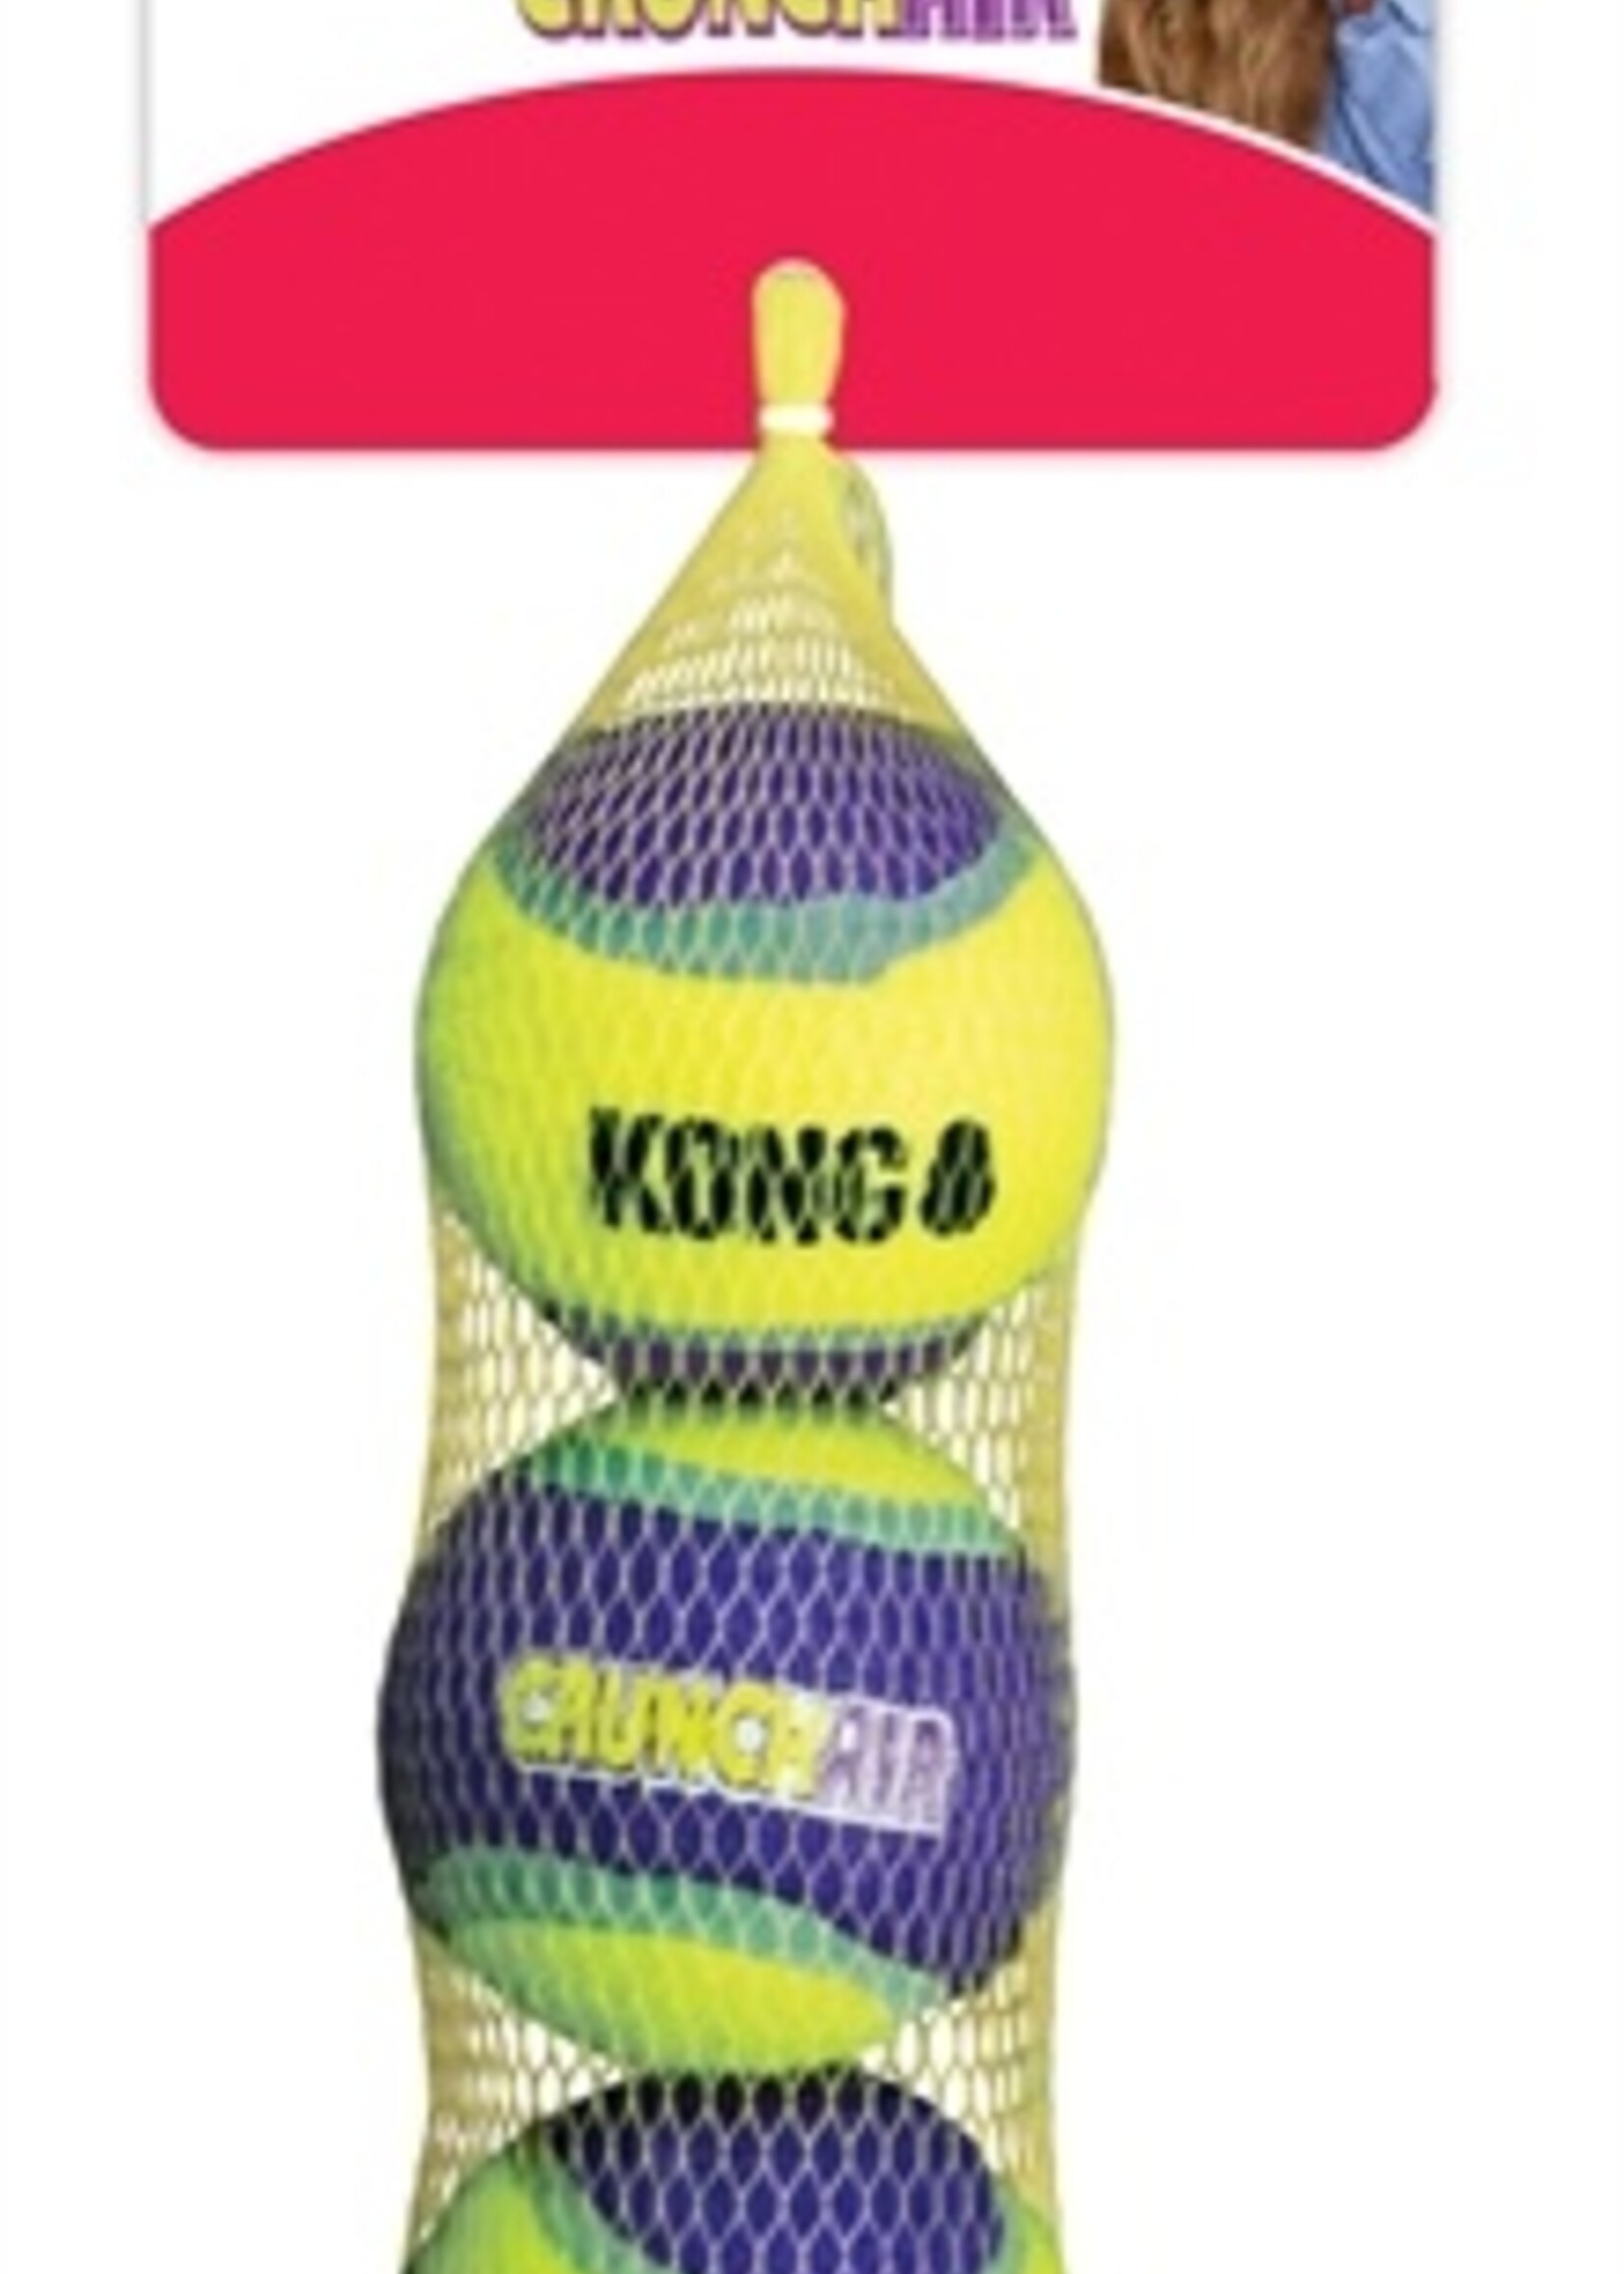 Kong Kong crunchair tennisballen